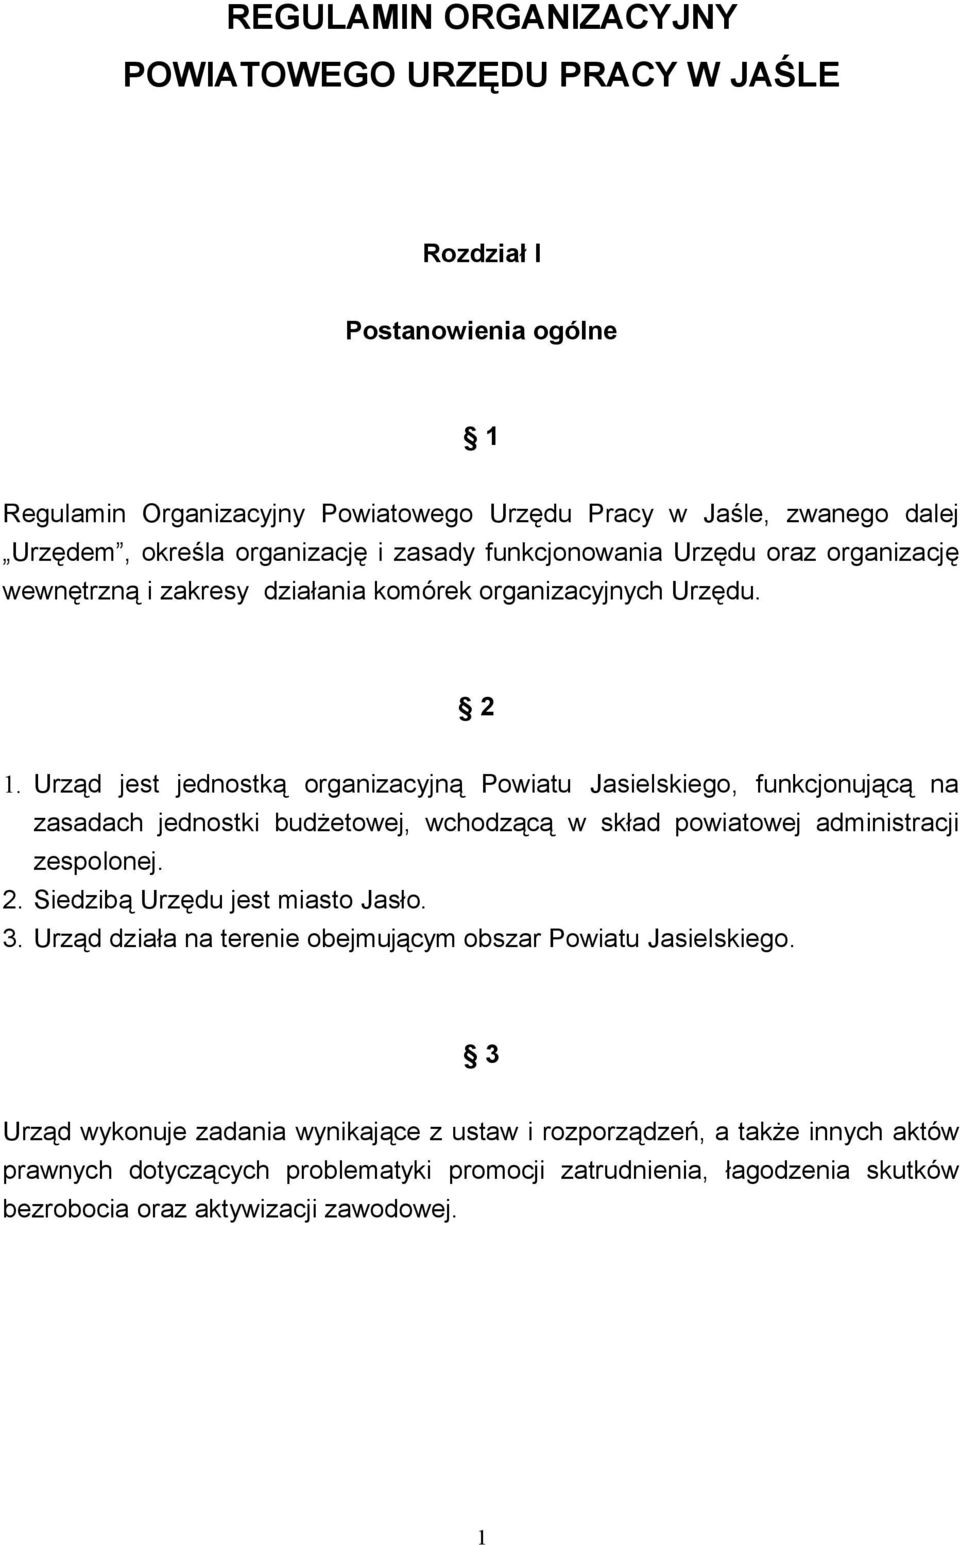 Urząd jest jednostką organizacyjną Powiatu Jasielskiego, funkcjonującą na zasadach jednostki budżetowej, wchodzącą w skład powiatowej administracji zespolonej. 2.